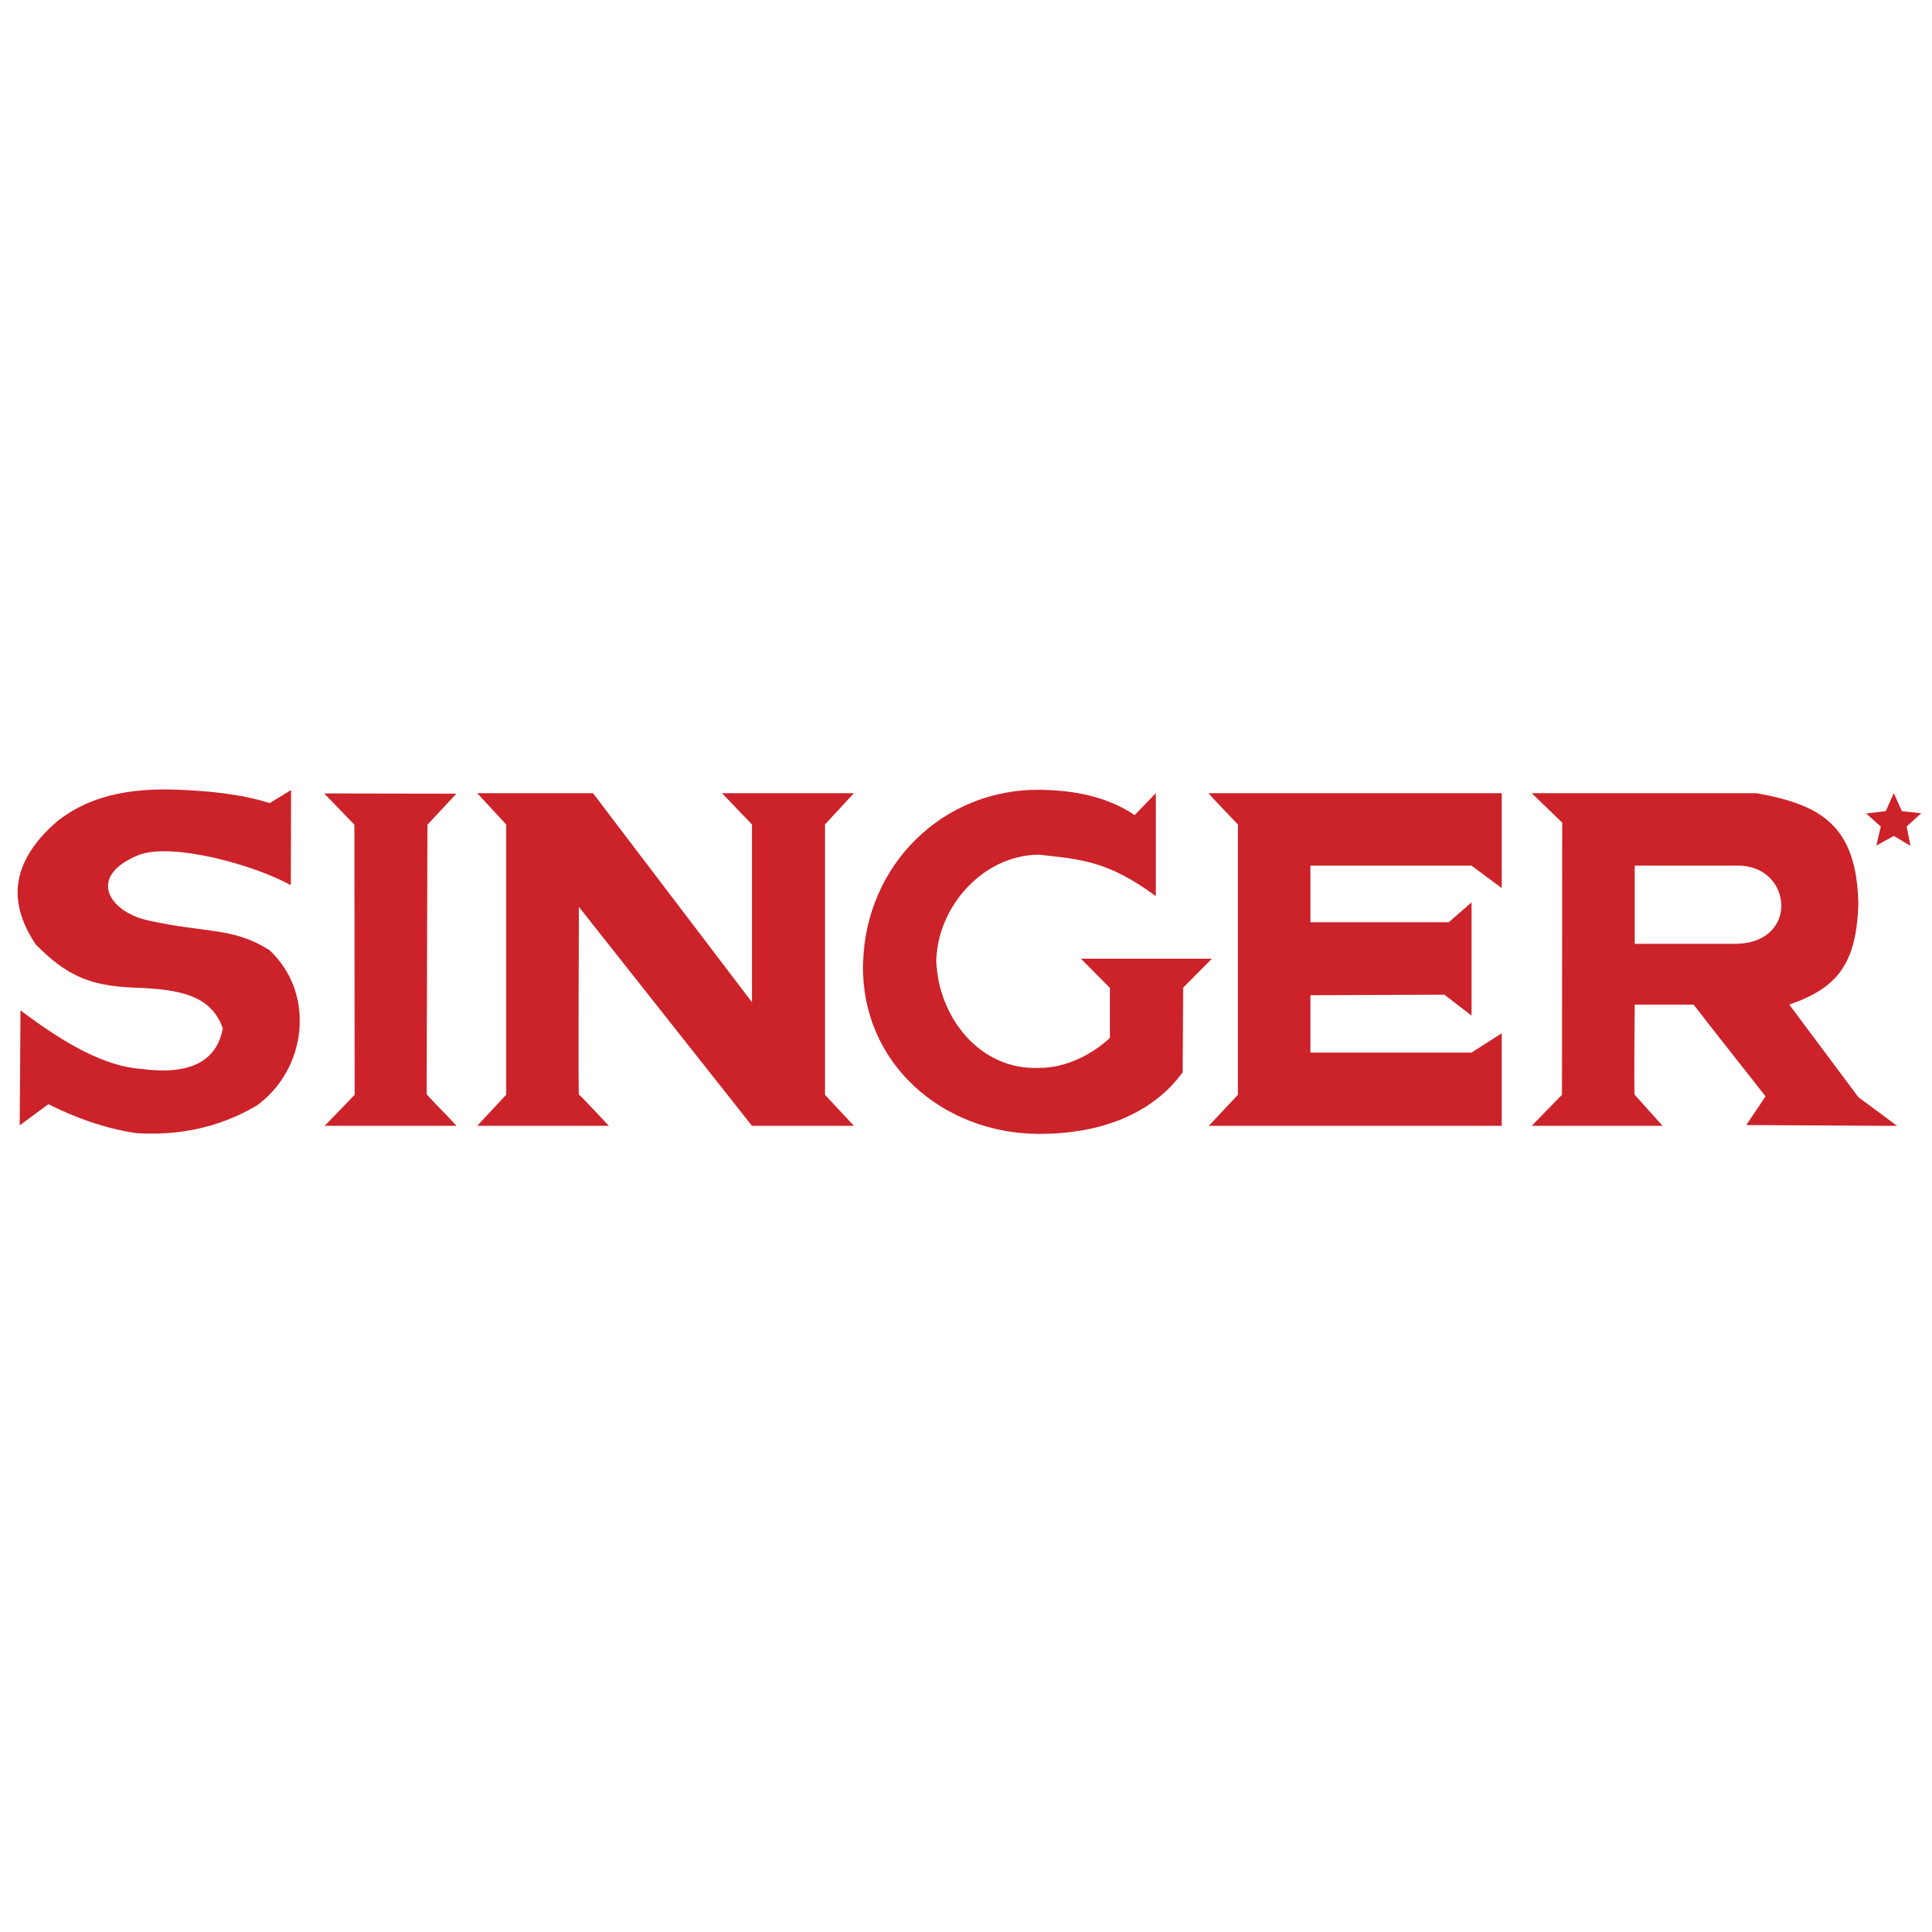 Singer Logo - Singer Logo PNG Transparent & SVG Vector